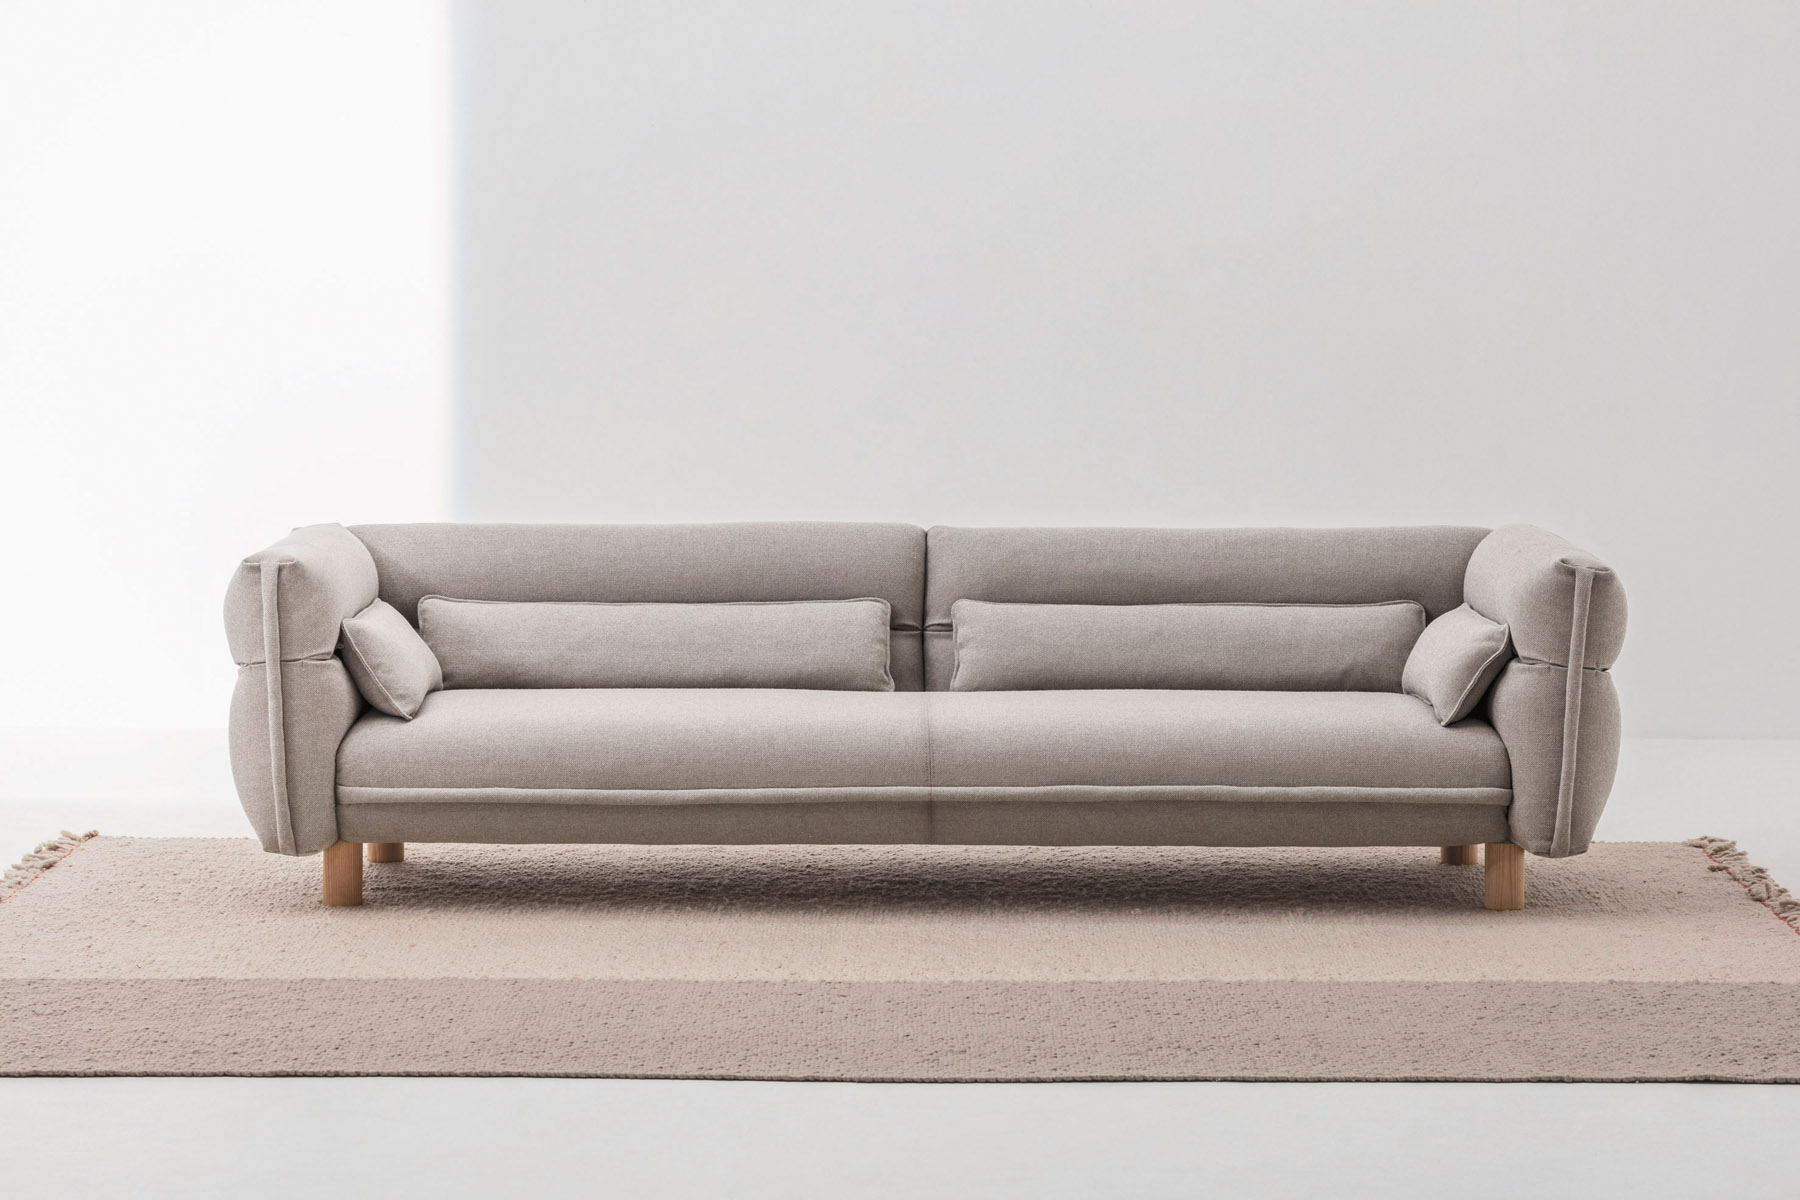 NAP sofa LACIVIDINA italian designer furniture 014